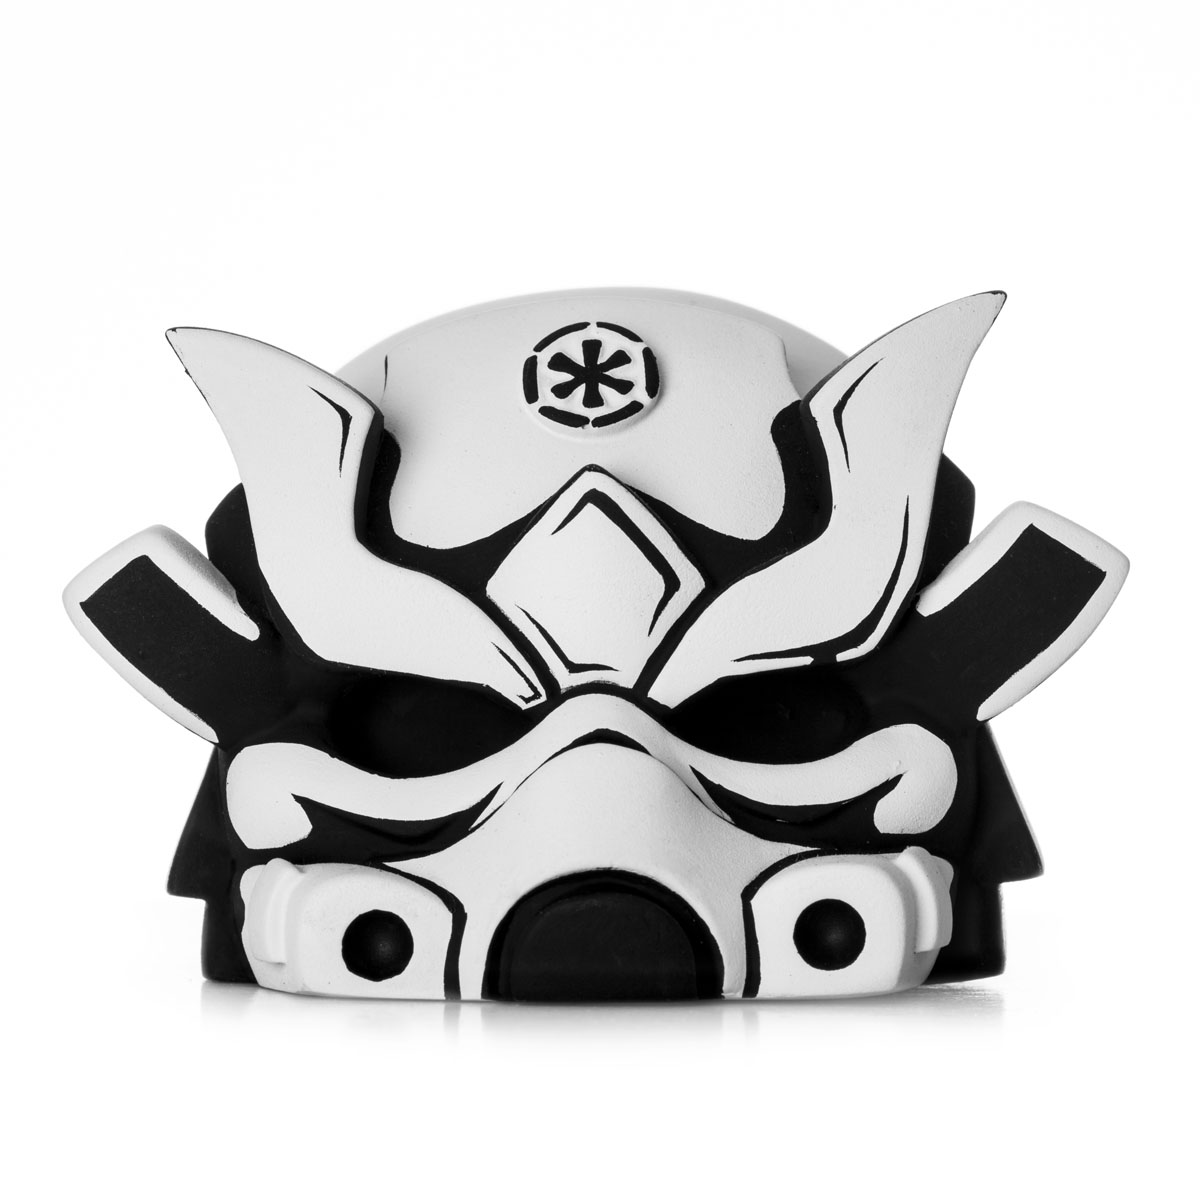 JPK Stormtrooper Samurai Artmymind Helmet